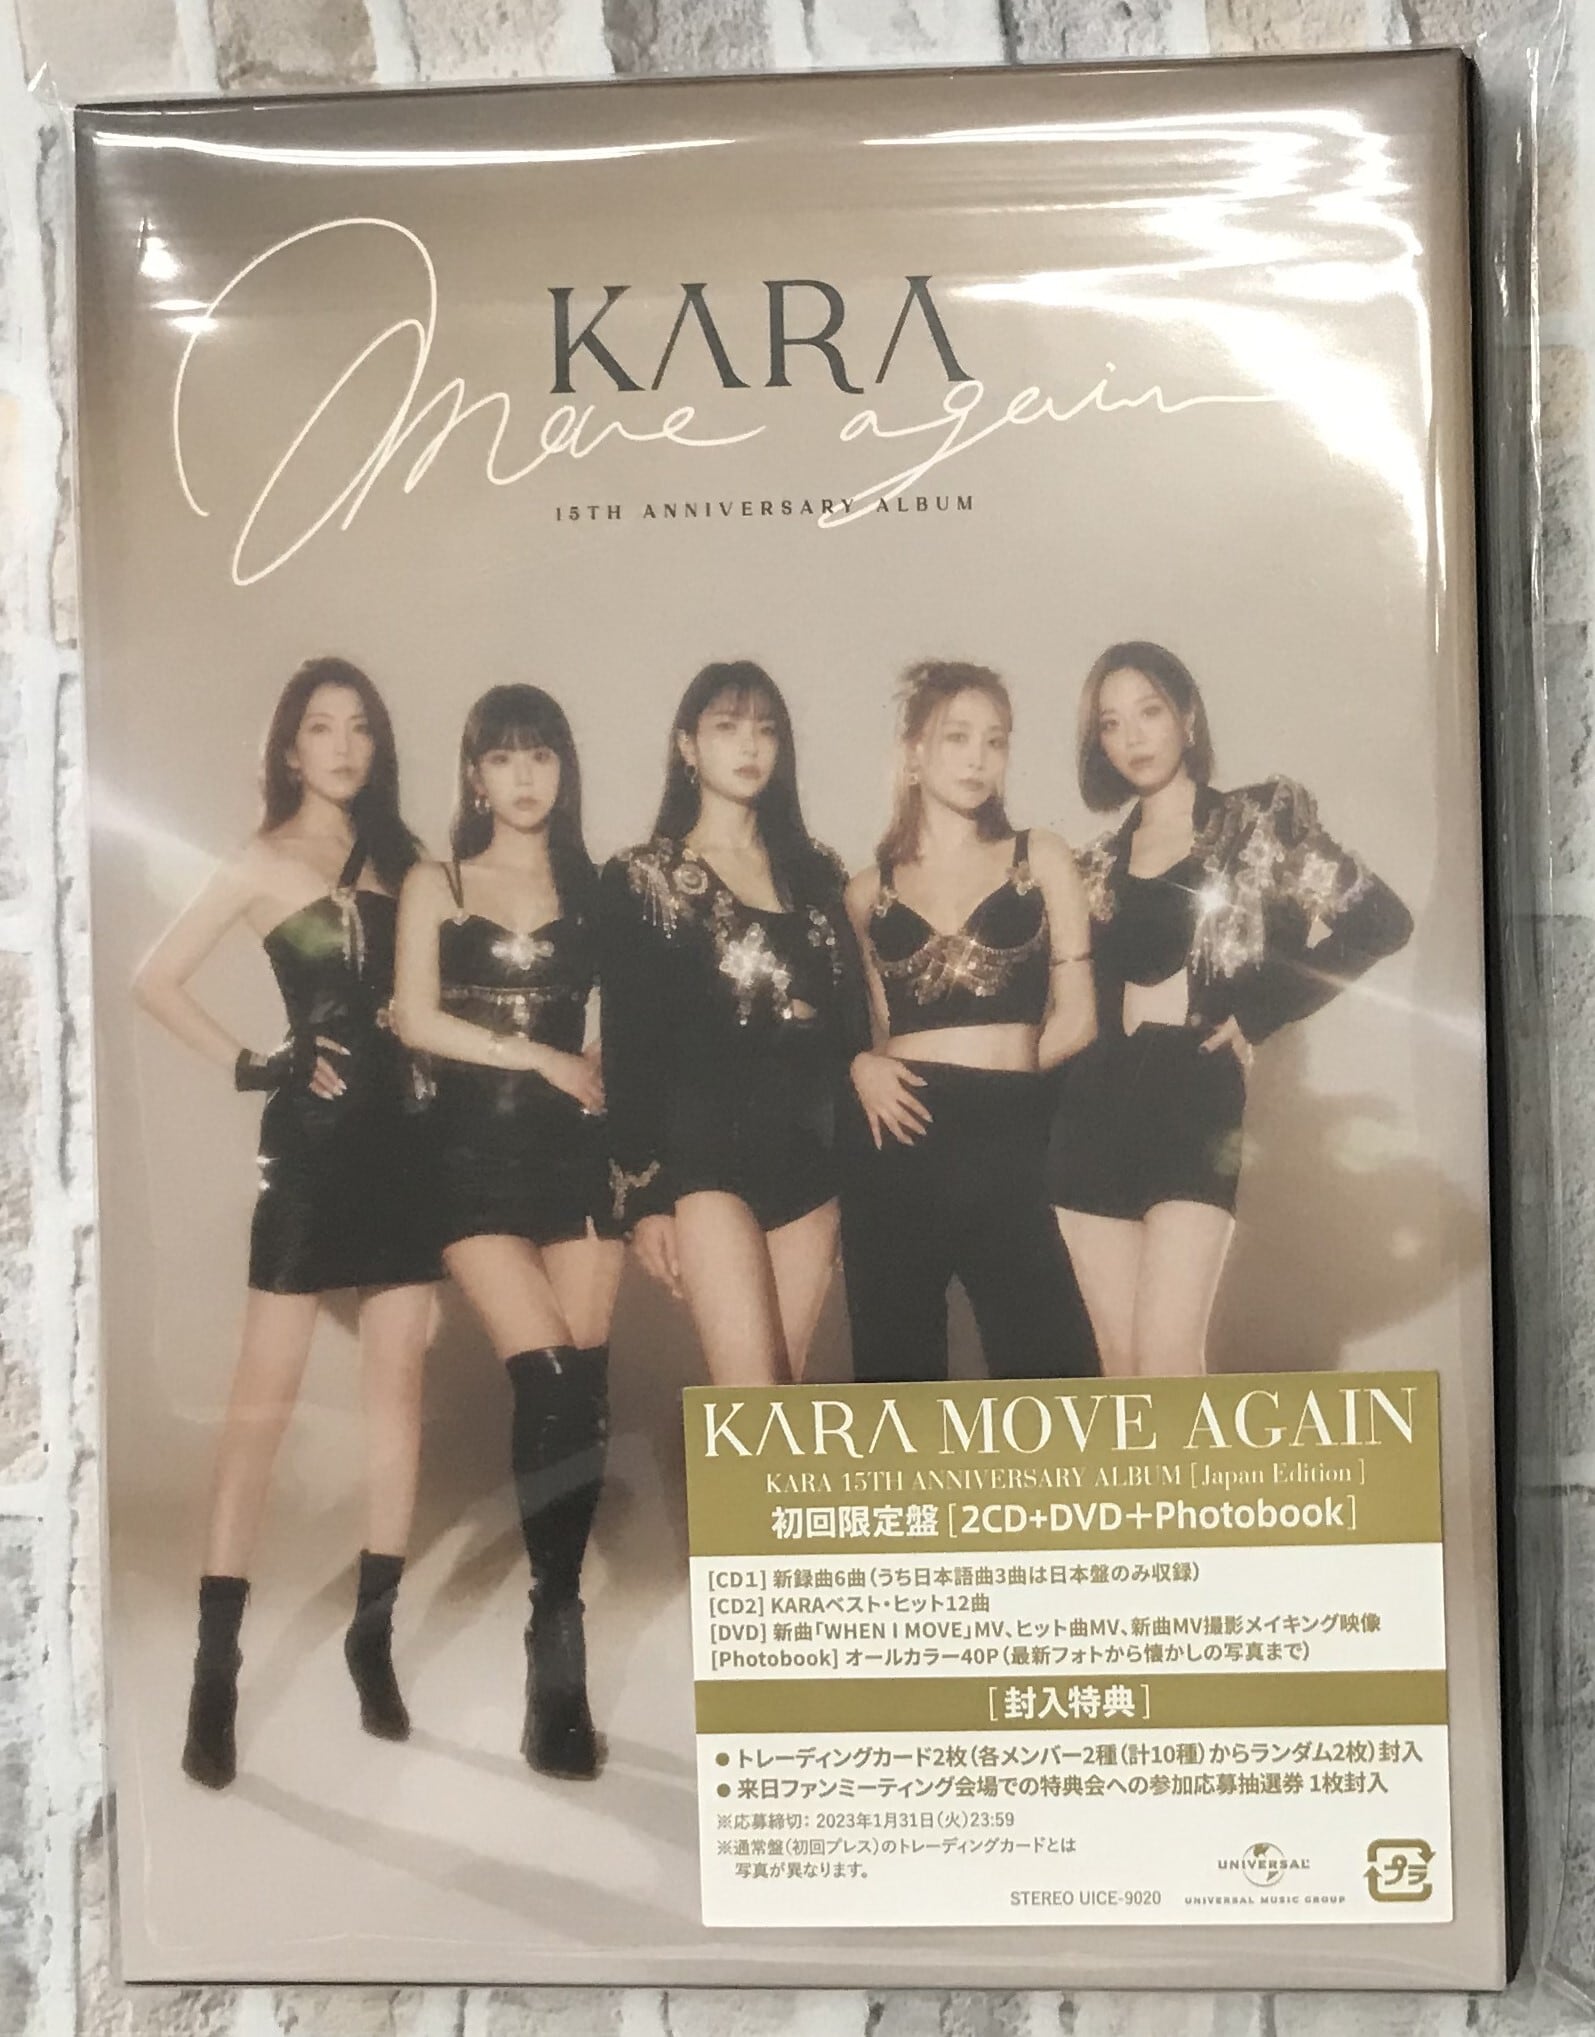 激安な (CD+DVD) KARA CD Kara CD アルバム&シングル 37点セット CD